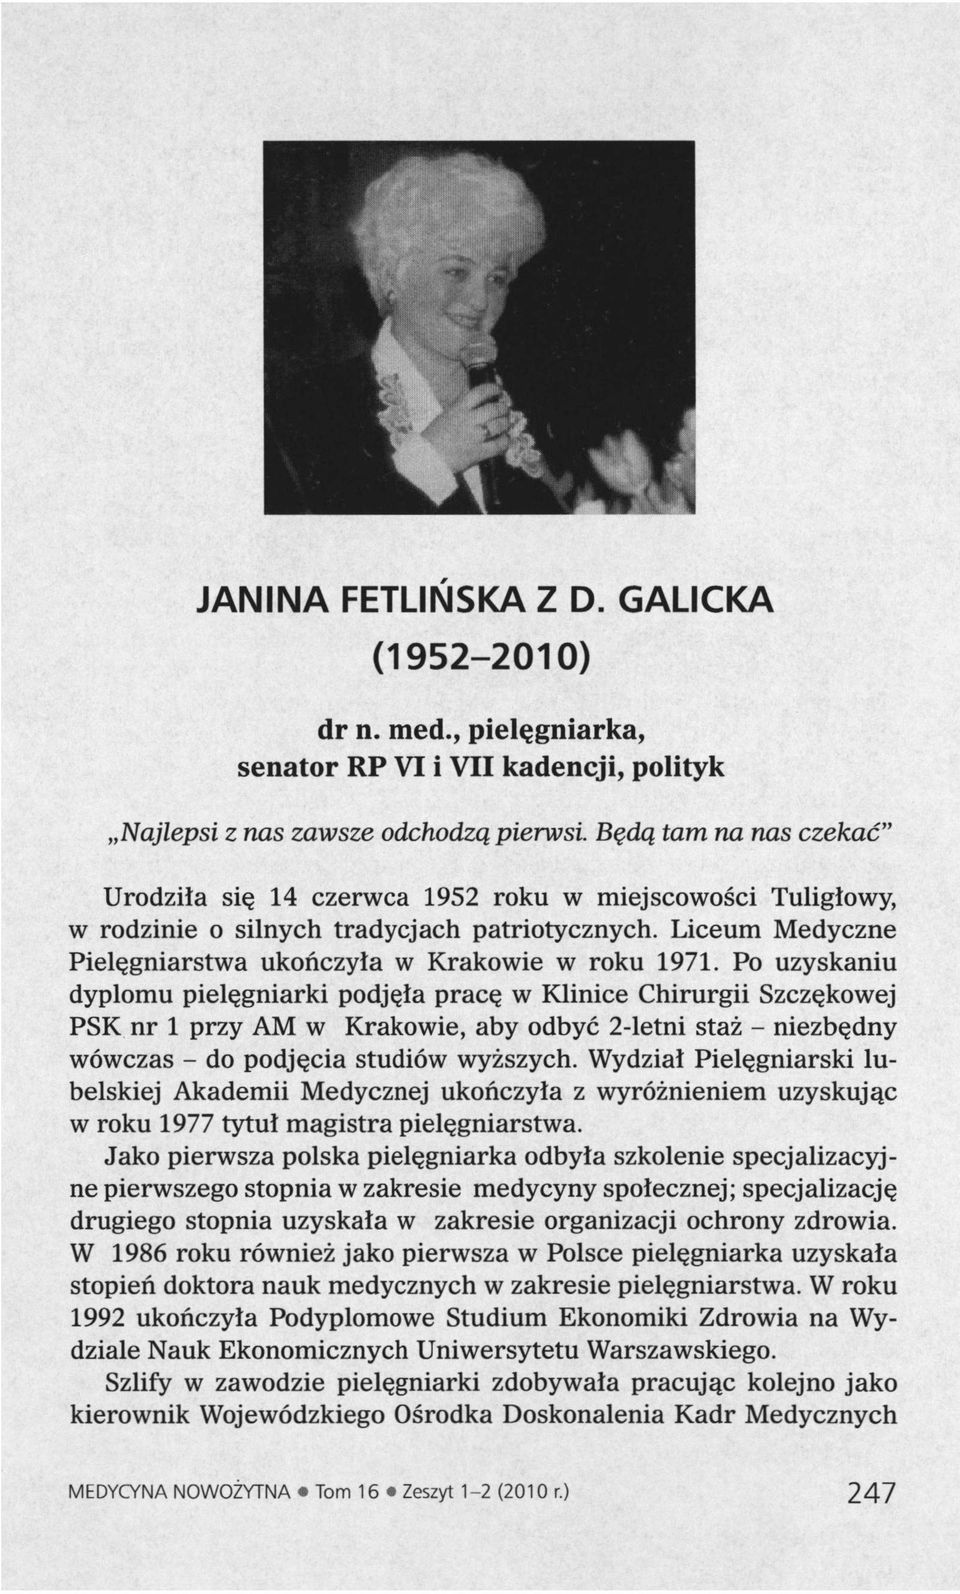 Po uzyskaniu dyplomu pielęgniarki podjęła pracę w Klinice Chirurgii Szczękowej PSK nr 1 przy AM w Krakowie, aby odbyć 2-letni staż - niezbędny wówczas - do podjęcia studiów wyższych.